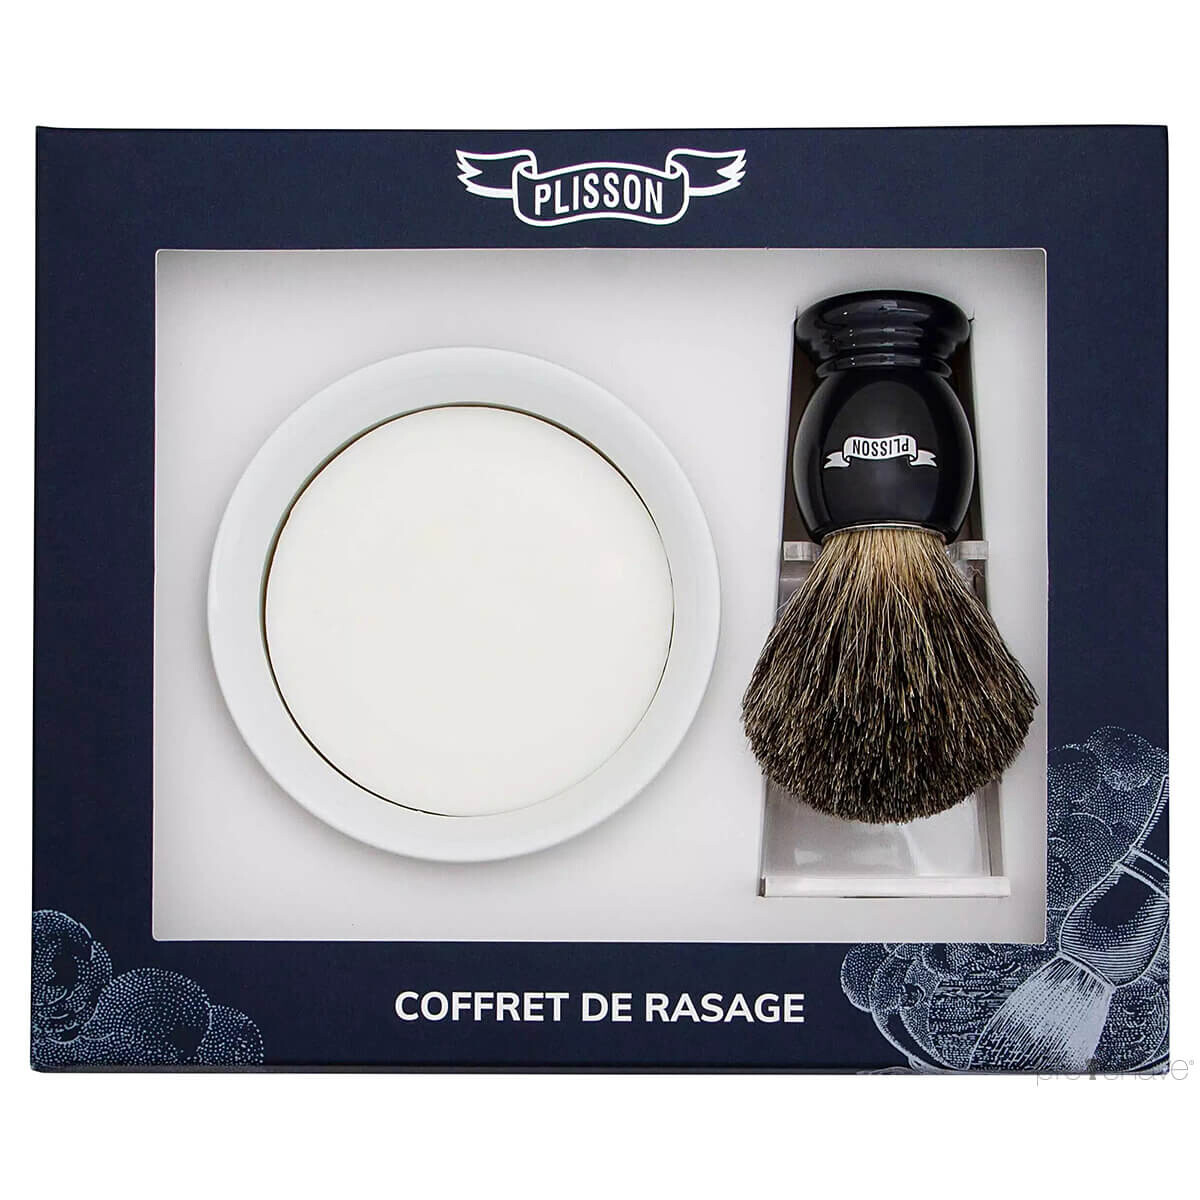 Plisson Startsæt med Russian Grey Badger Barberkost, Holder og Porcelænsskål med Barbersæbe, Sort